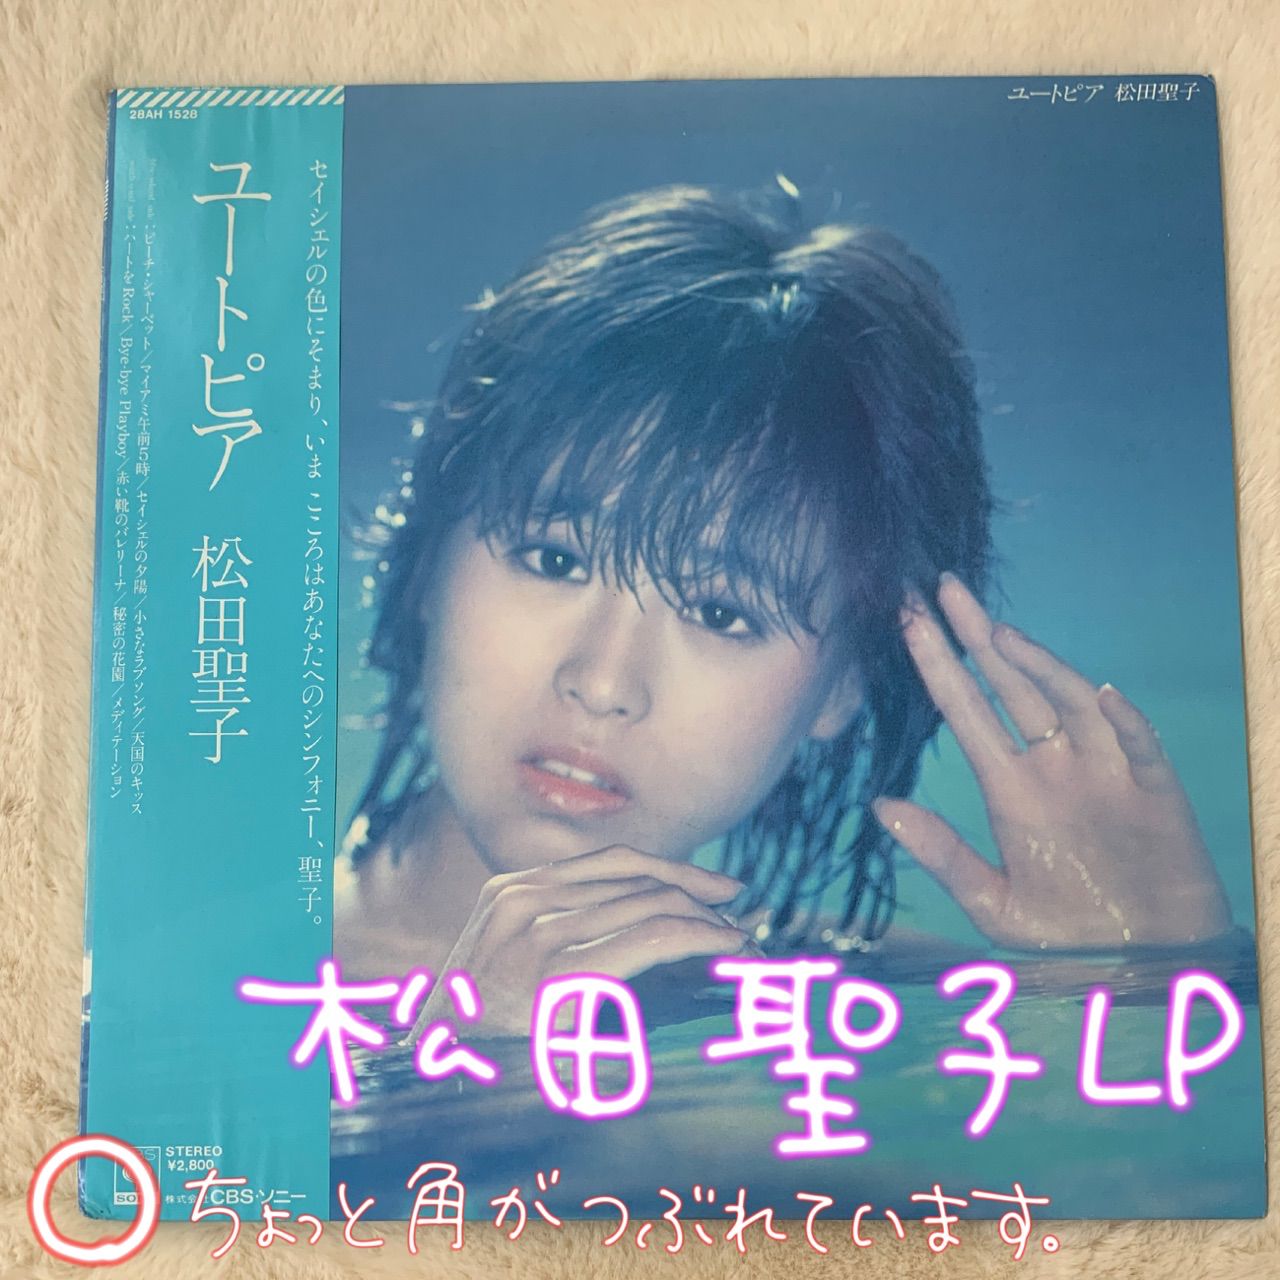 ユートピア 松田聖子 レコード - 邦楽